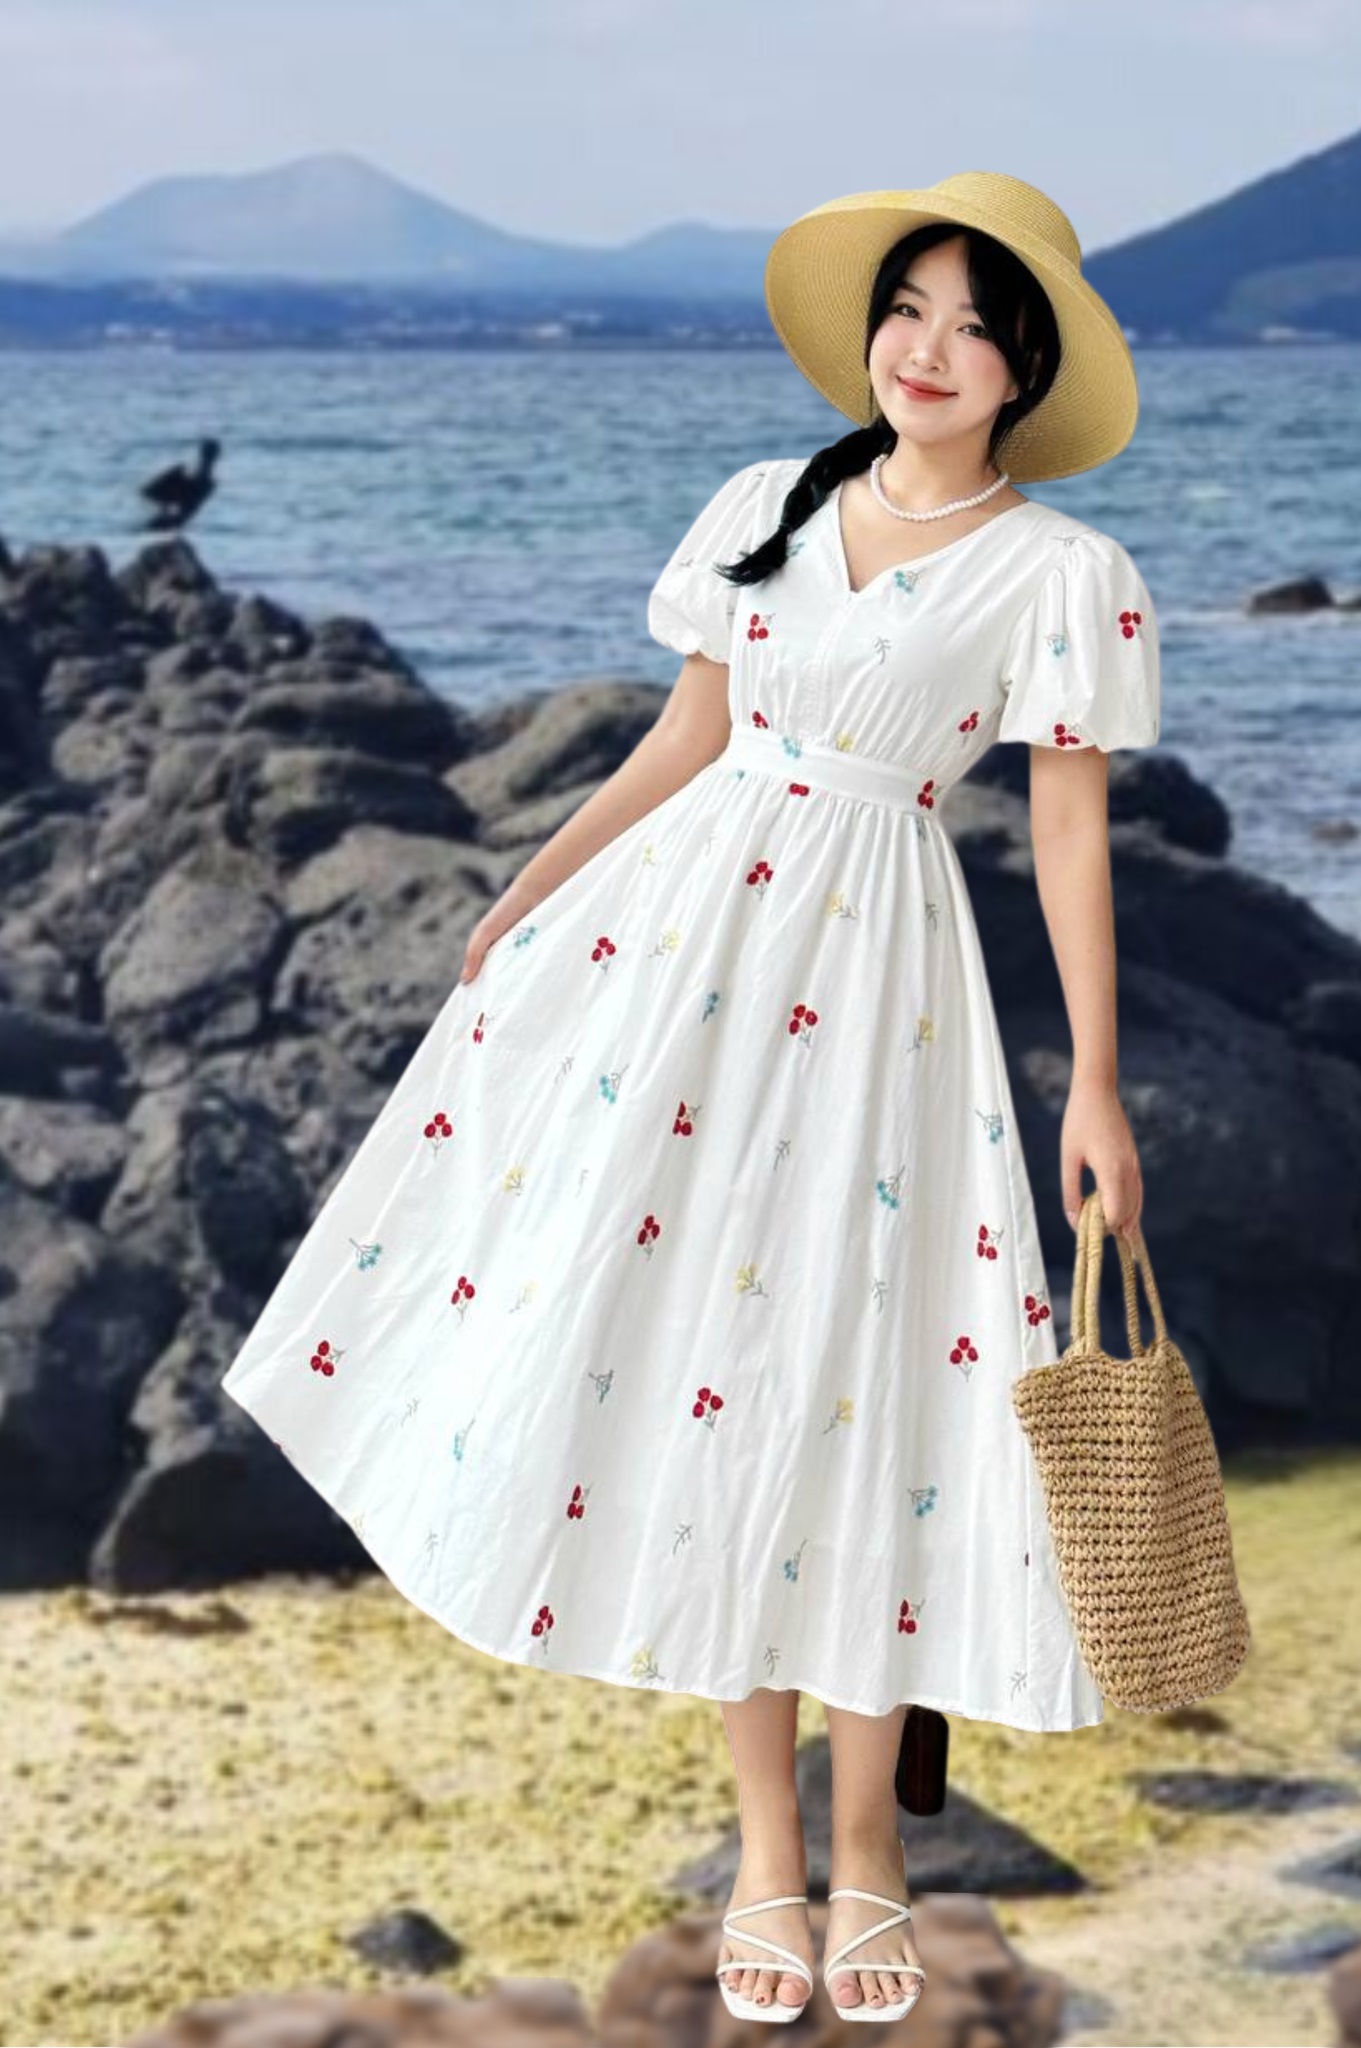 Váy maxi trắng trễ vai đi biển 2019 #maxitrang #vaydibiendep #vaydibien  #vaydibien2019 #vaydepdibien #vaydibiendep #vaytrevai… | Trang phục nữ,  Thời trang, Váy maxi